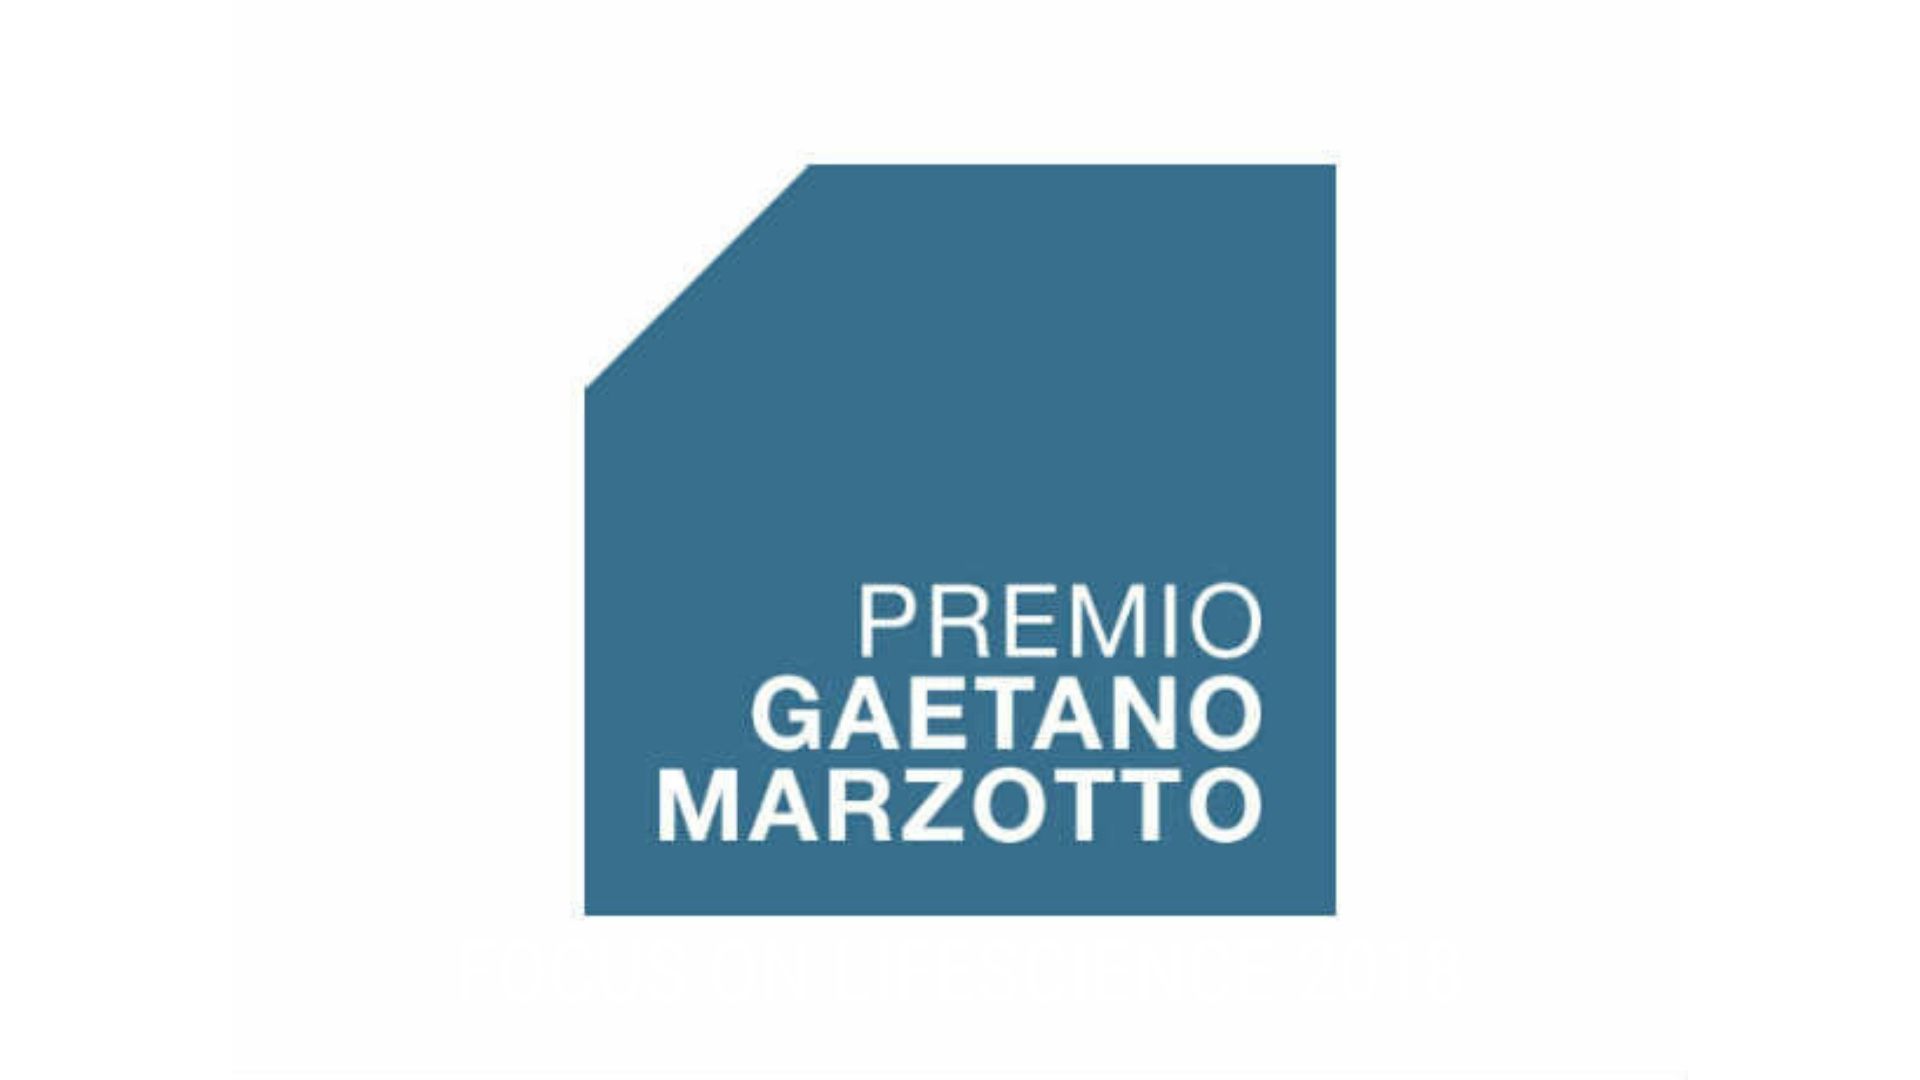 Premio gaetano marzotto 2019